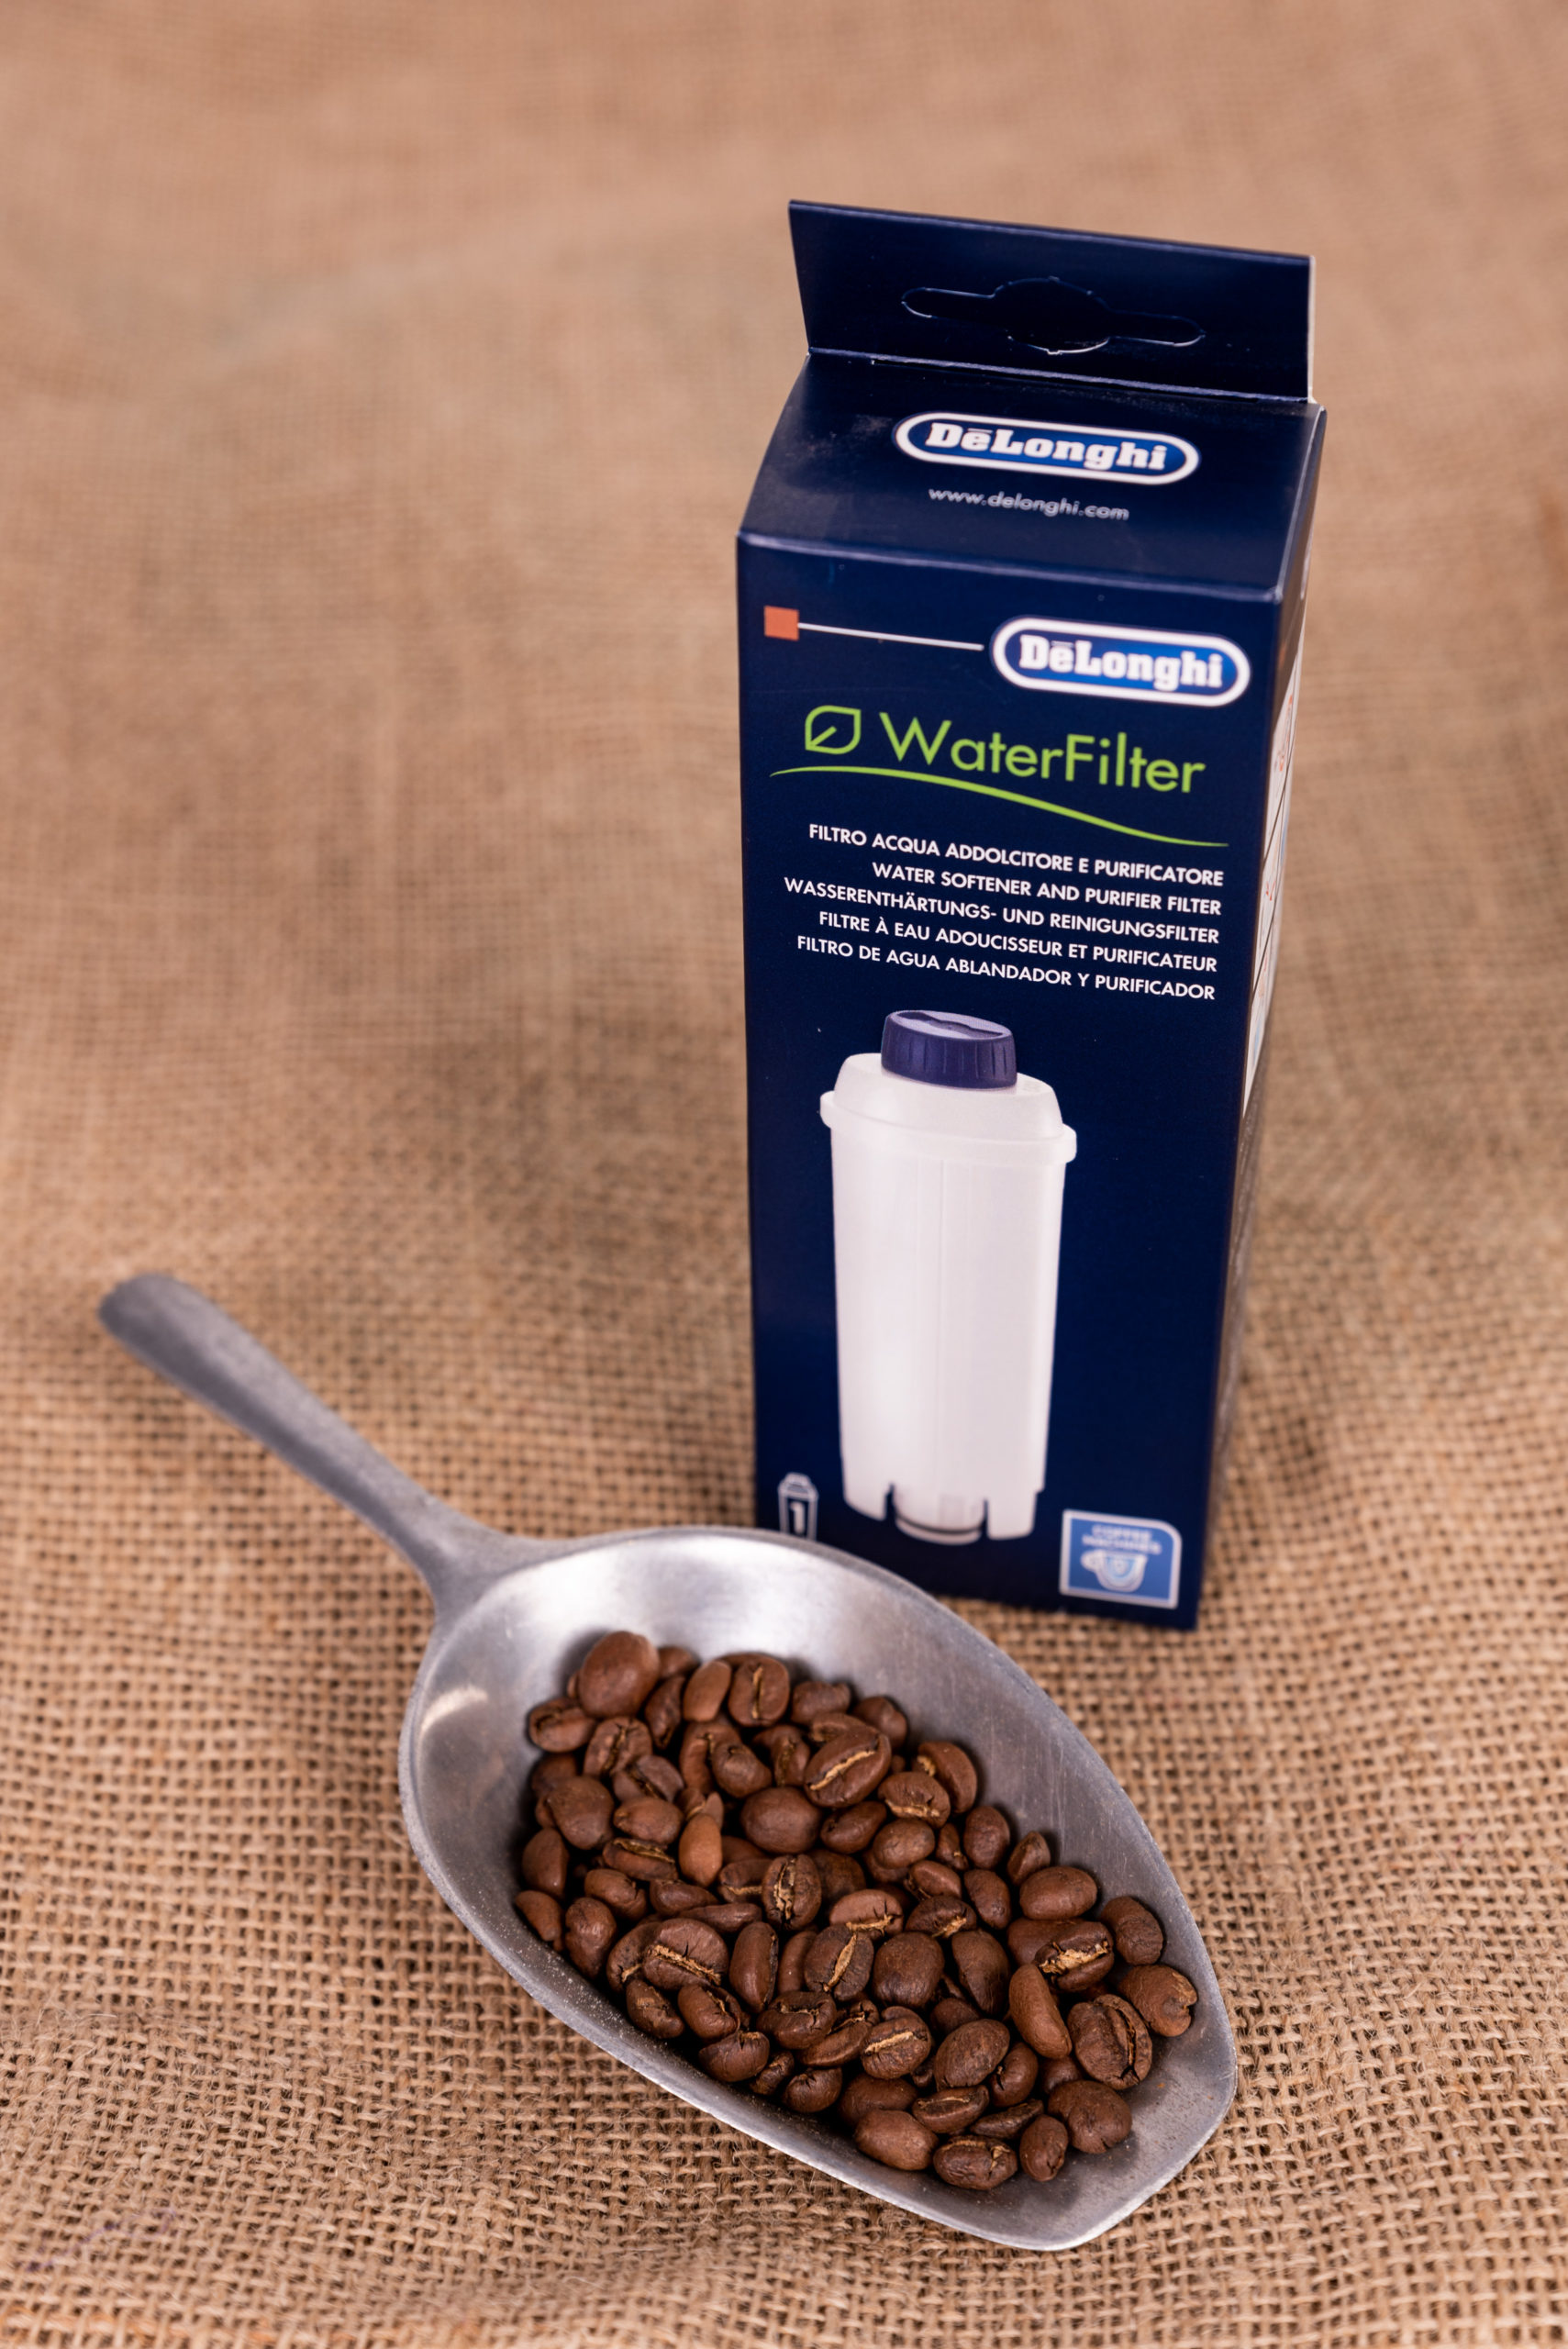 Pièces détachées DeLonghi - Réservoirs, filtres et accessoires pour votre  machine à café